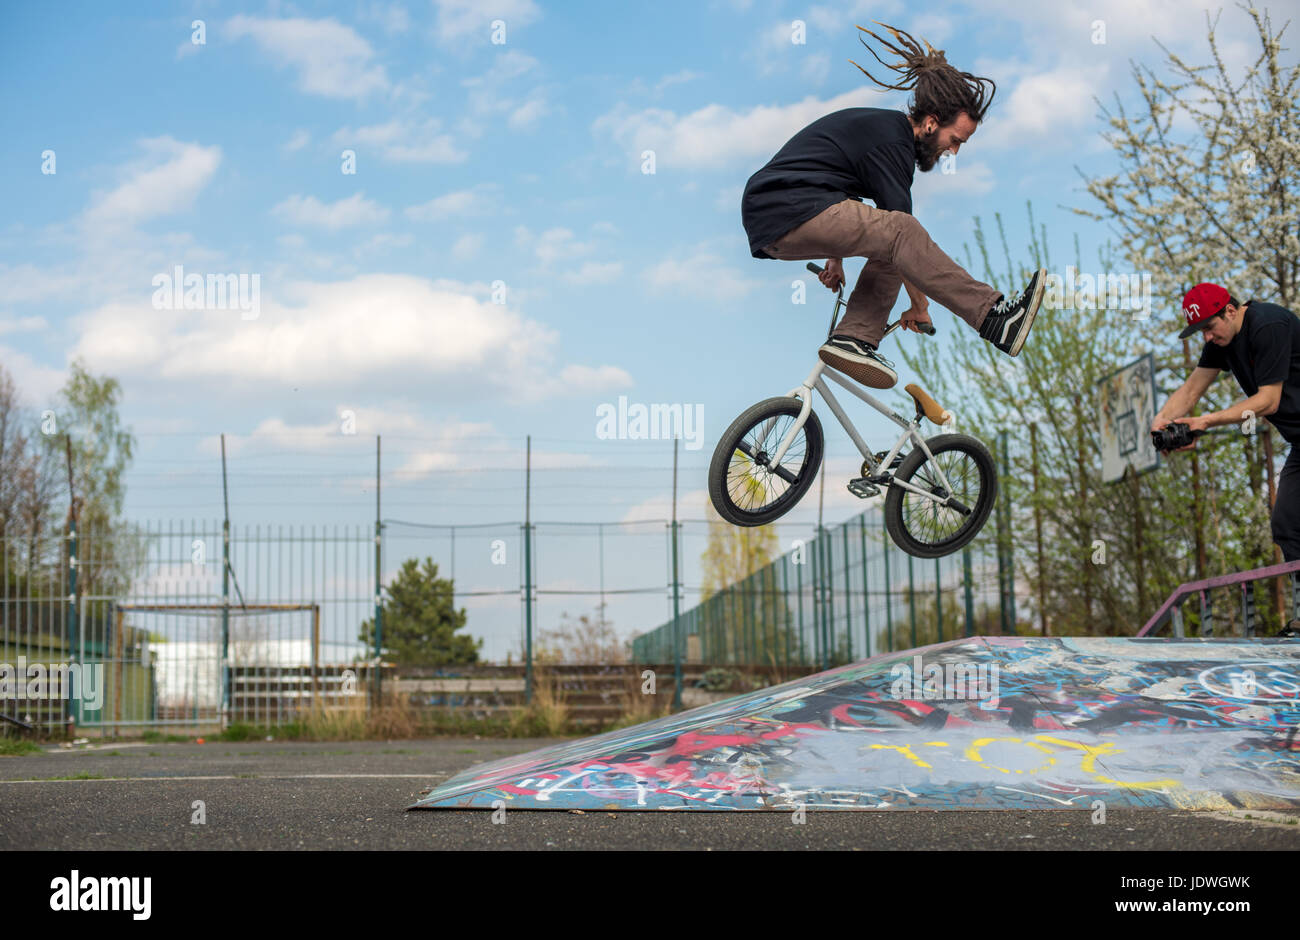 Dreadlock BMX rider effectue tailwhip trick dans le cadre urbain de Prague, République tchèque. Ciel bleu et Graffiti sont claires. Pas de logos. Banque D'Images